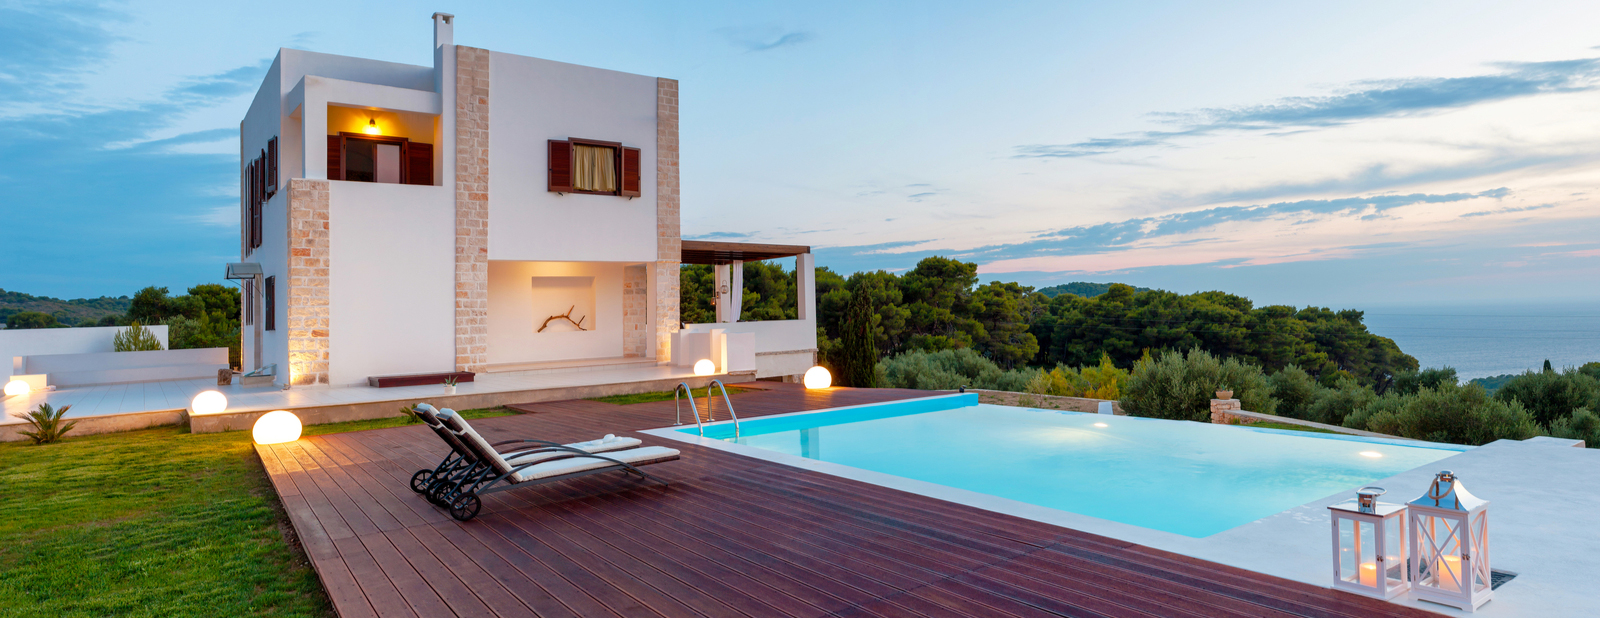 Luxury villa overlooking the sea